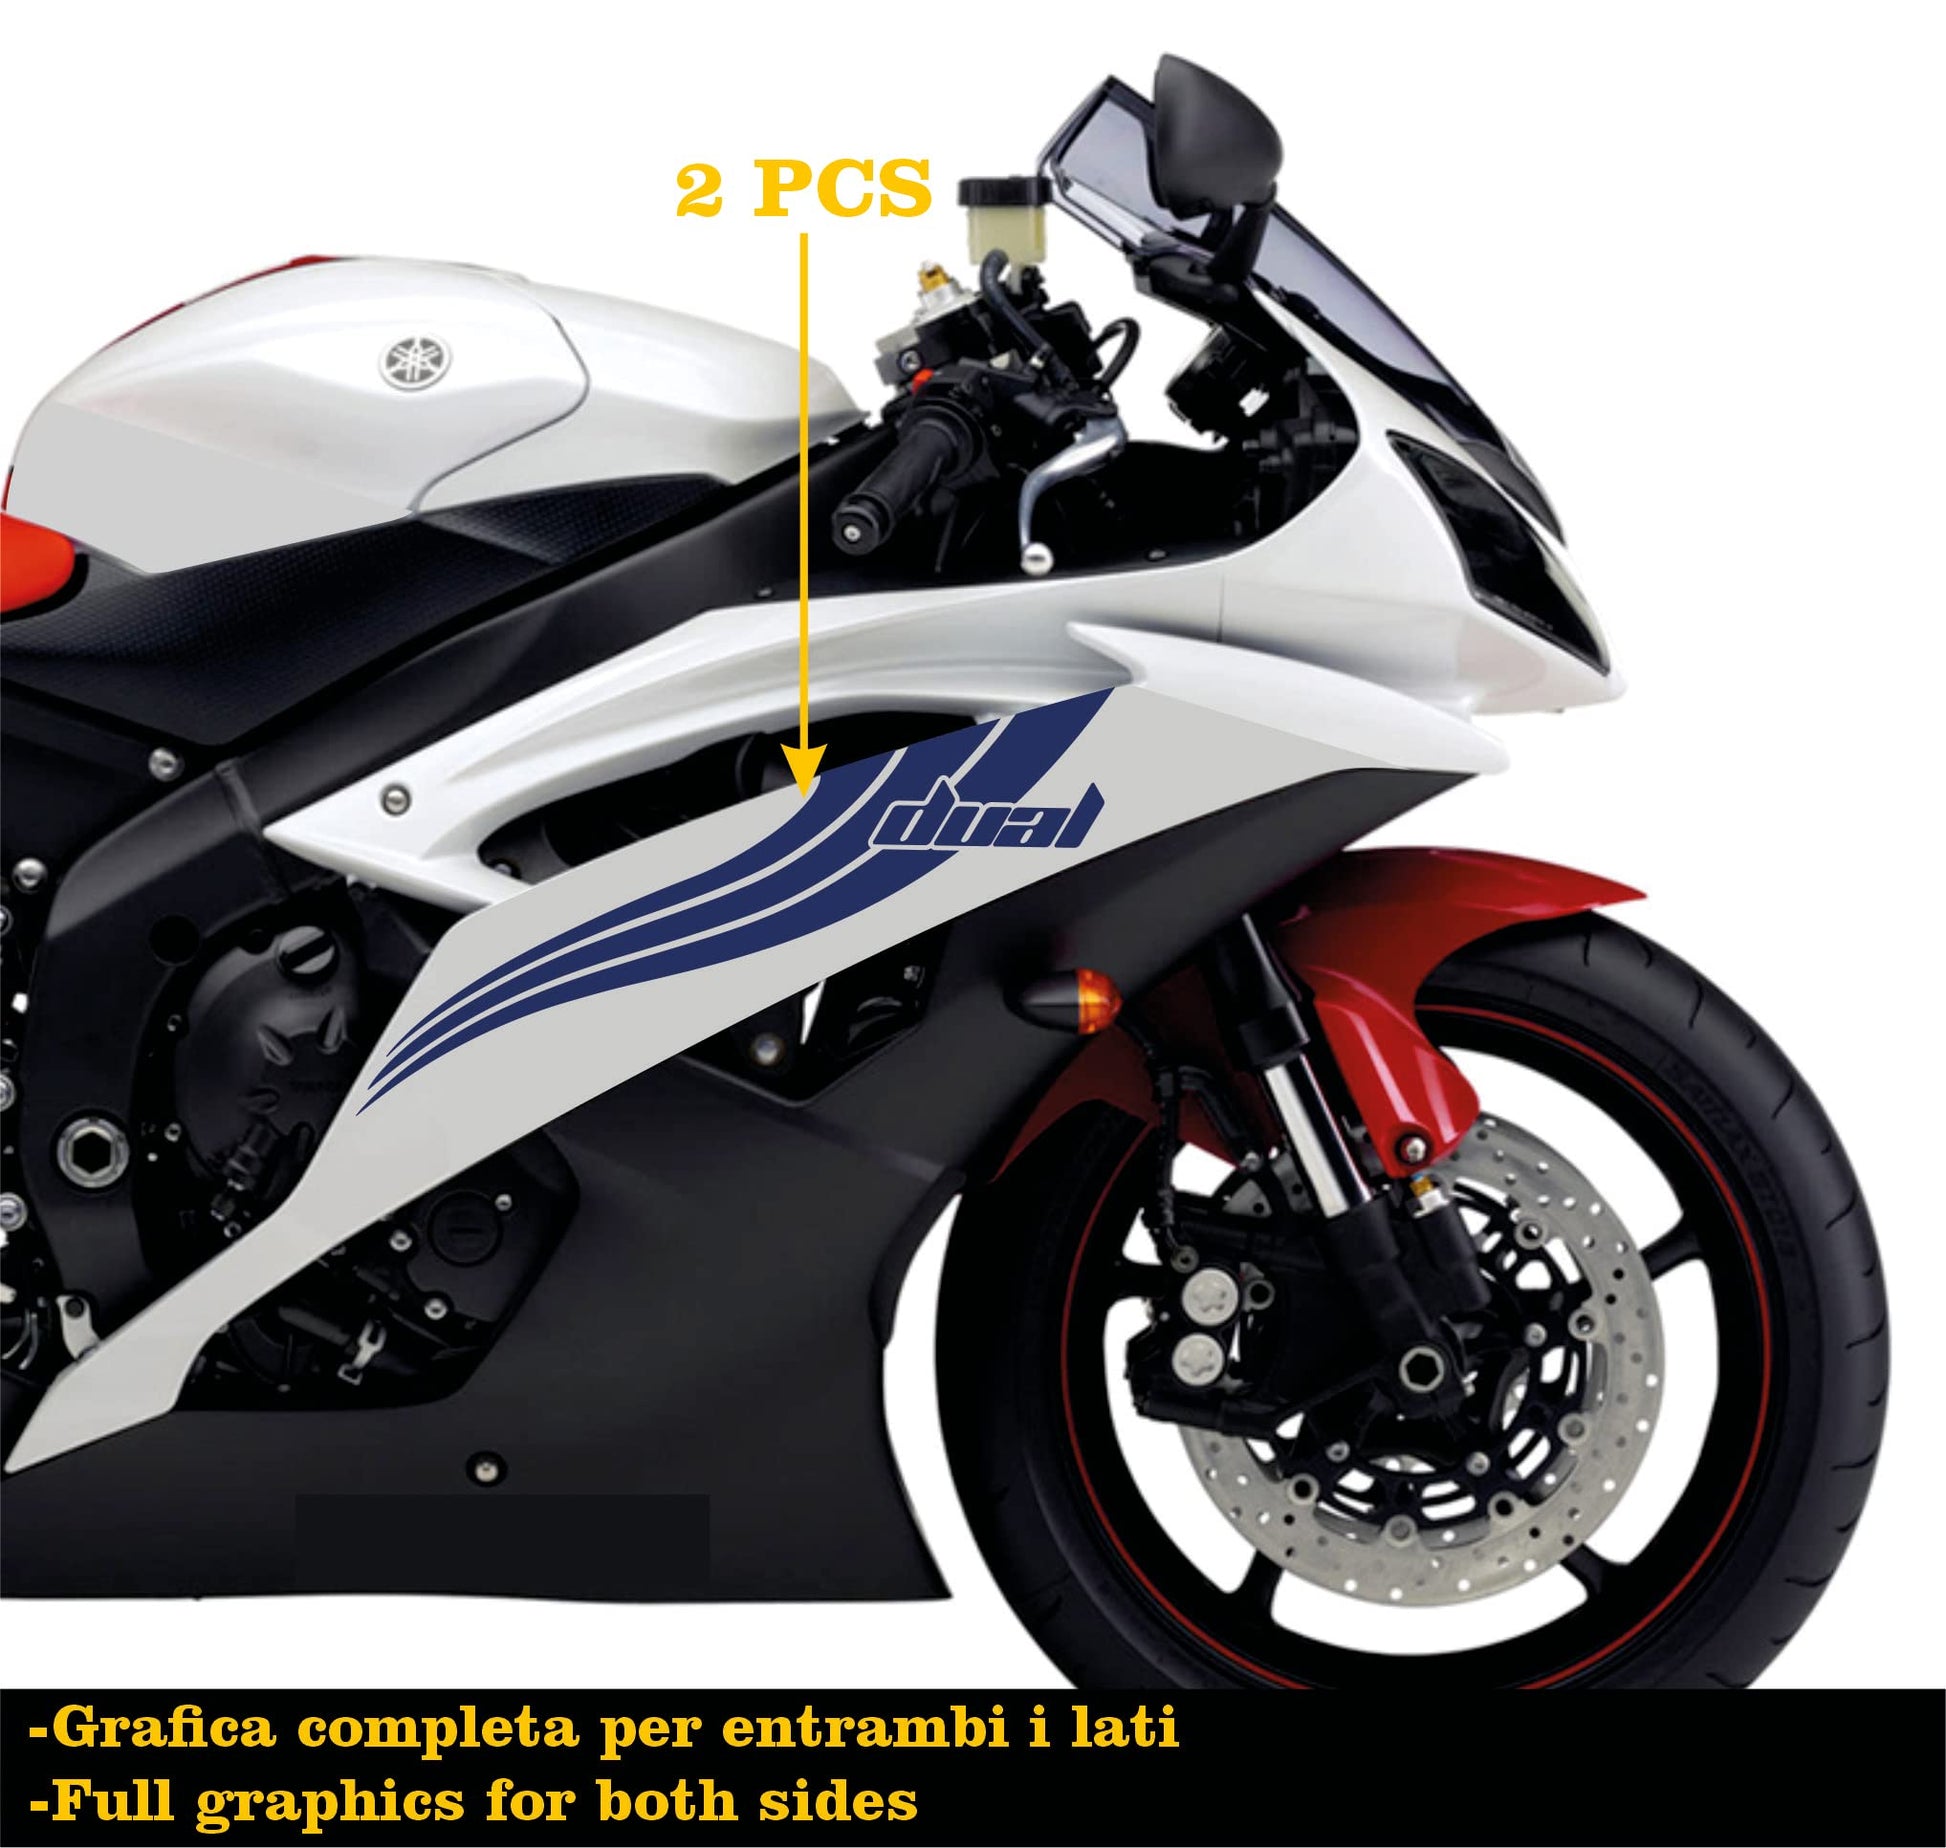 DualColorStampe Adesivi Compatibili con Yamaha R6 ANNO 2008 carena moto accessori stickers Motociclo colore a scelta DUAL COD.M0281 a €25.99 solo da DualColorStampe